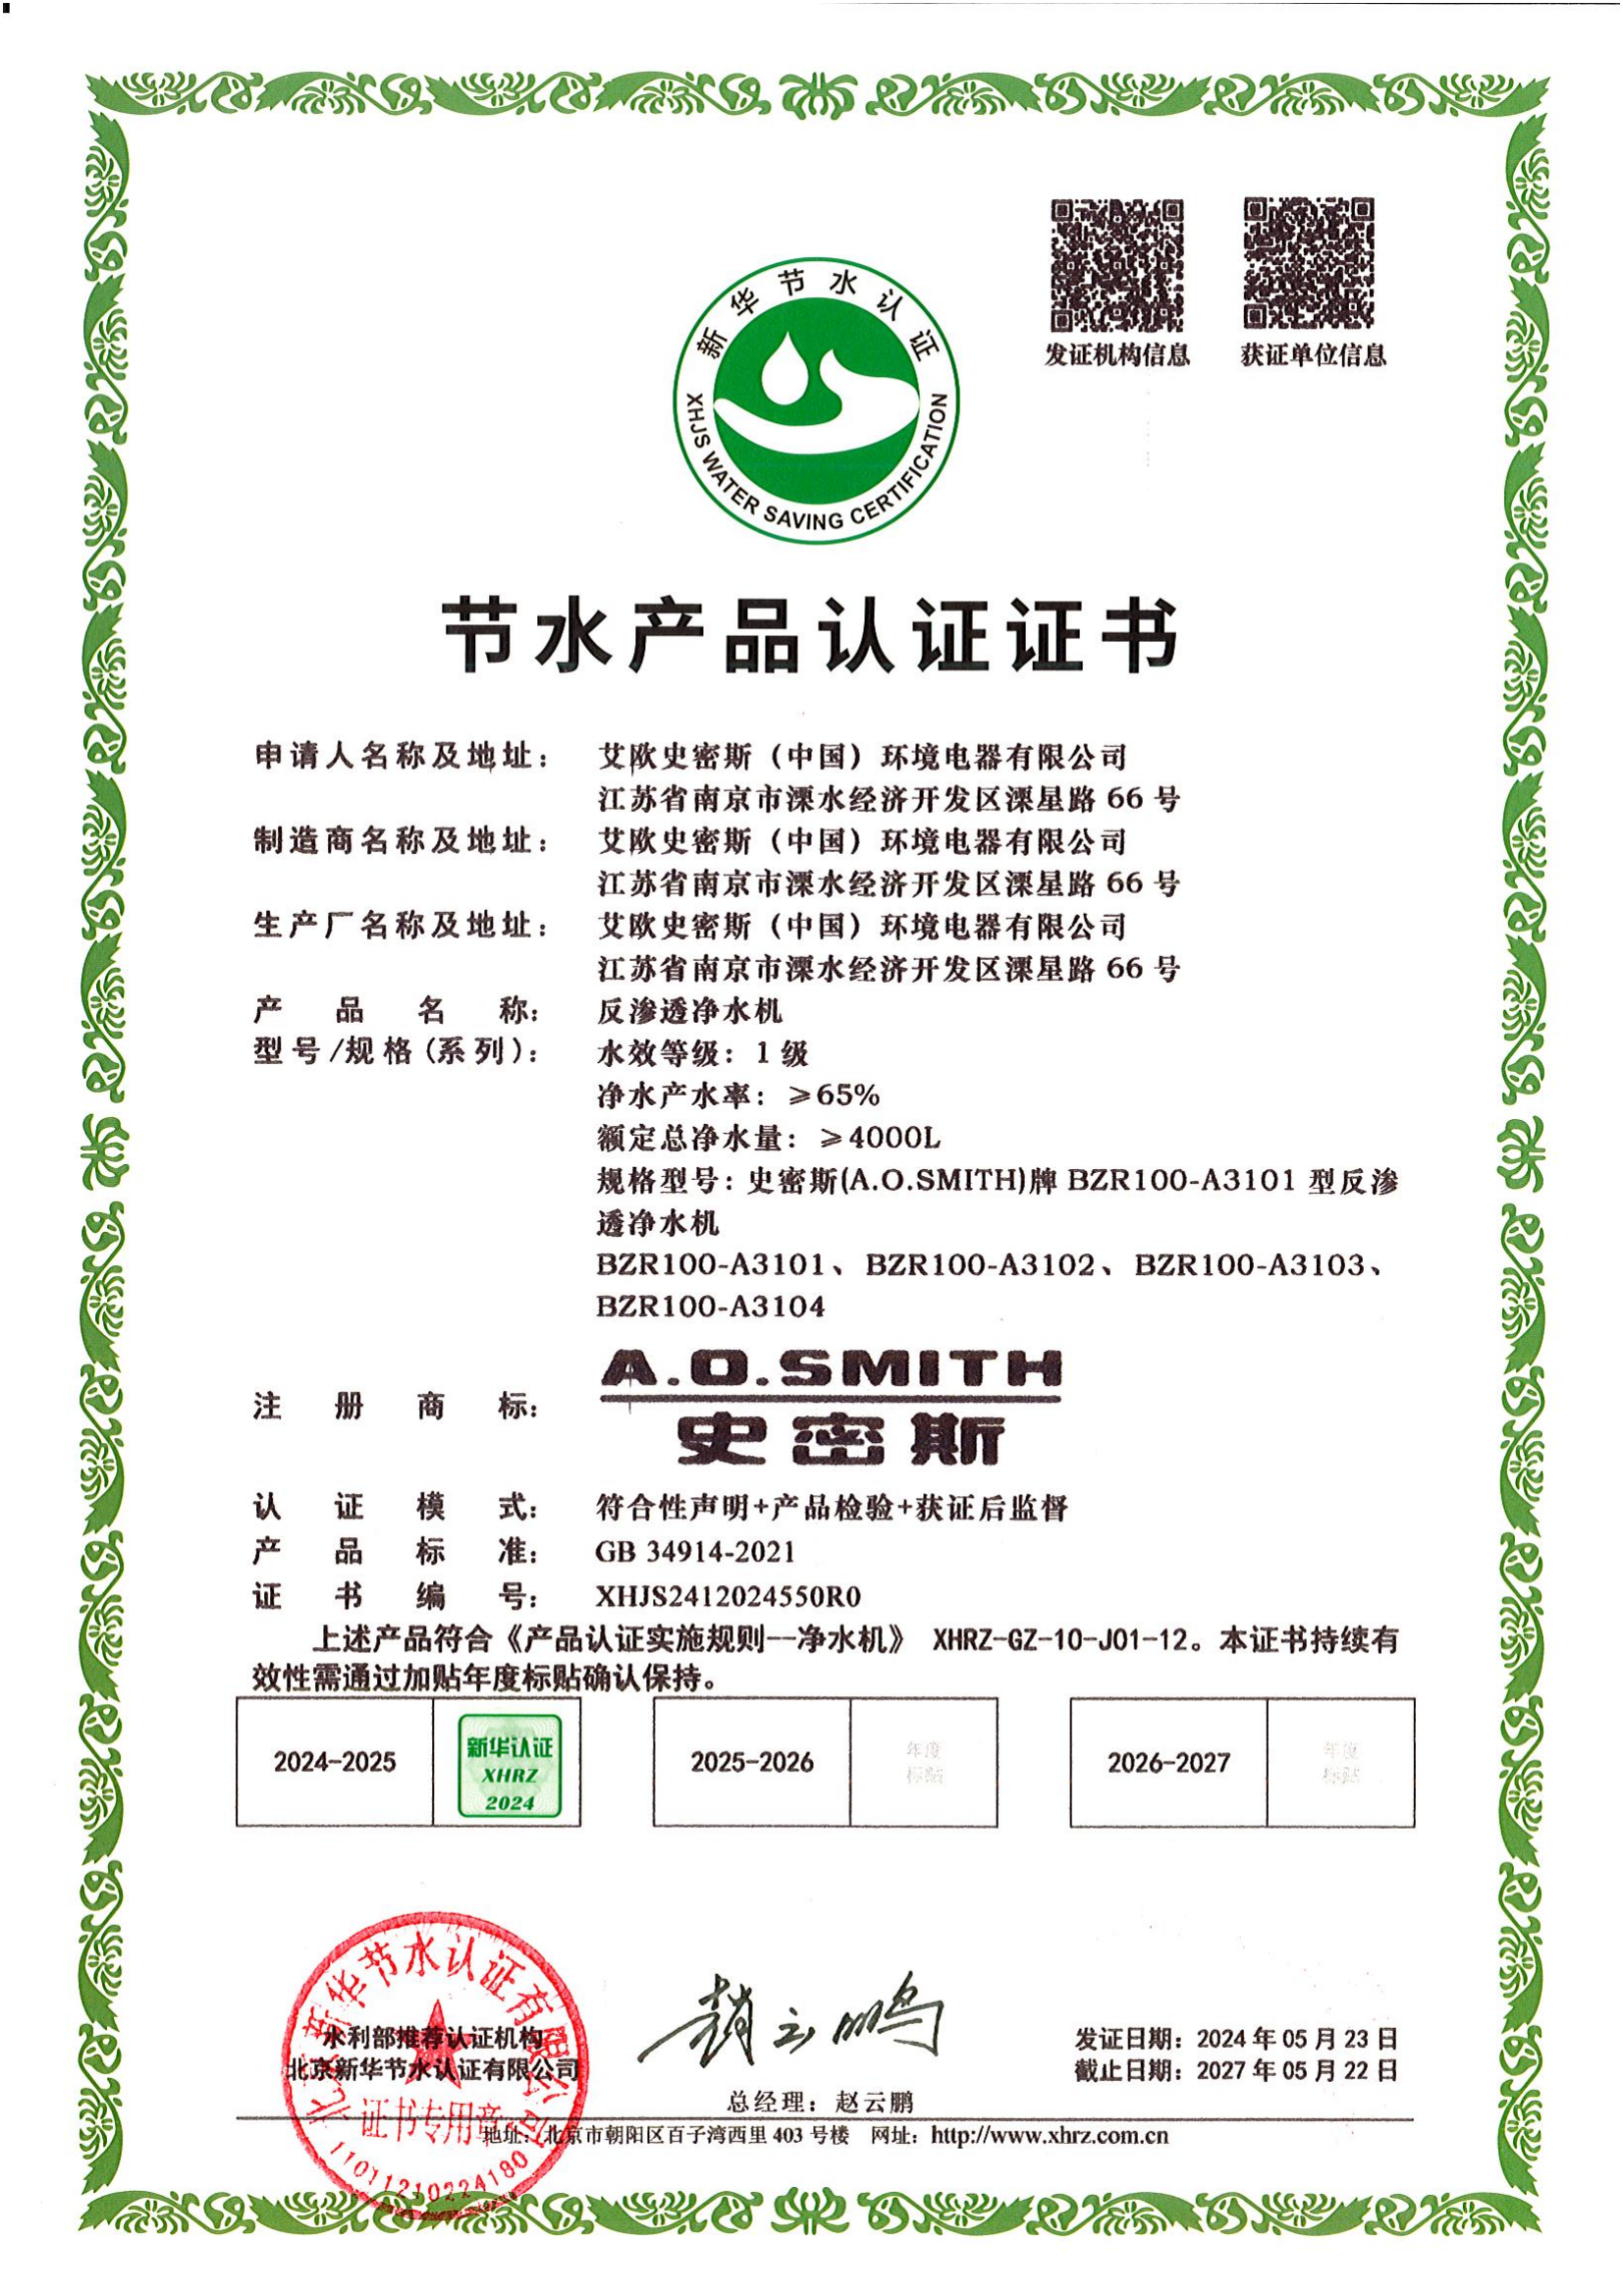 艾欧史密斯(中国)环境电器有限公司认证证书_00.png